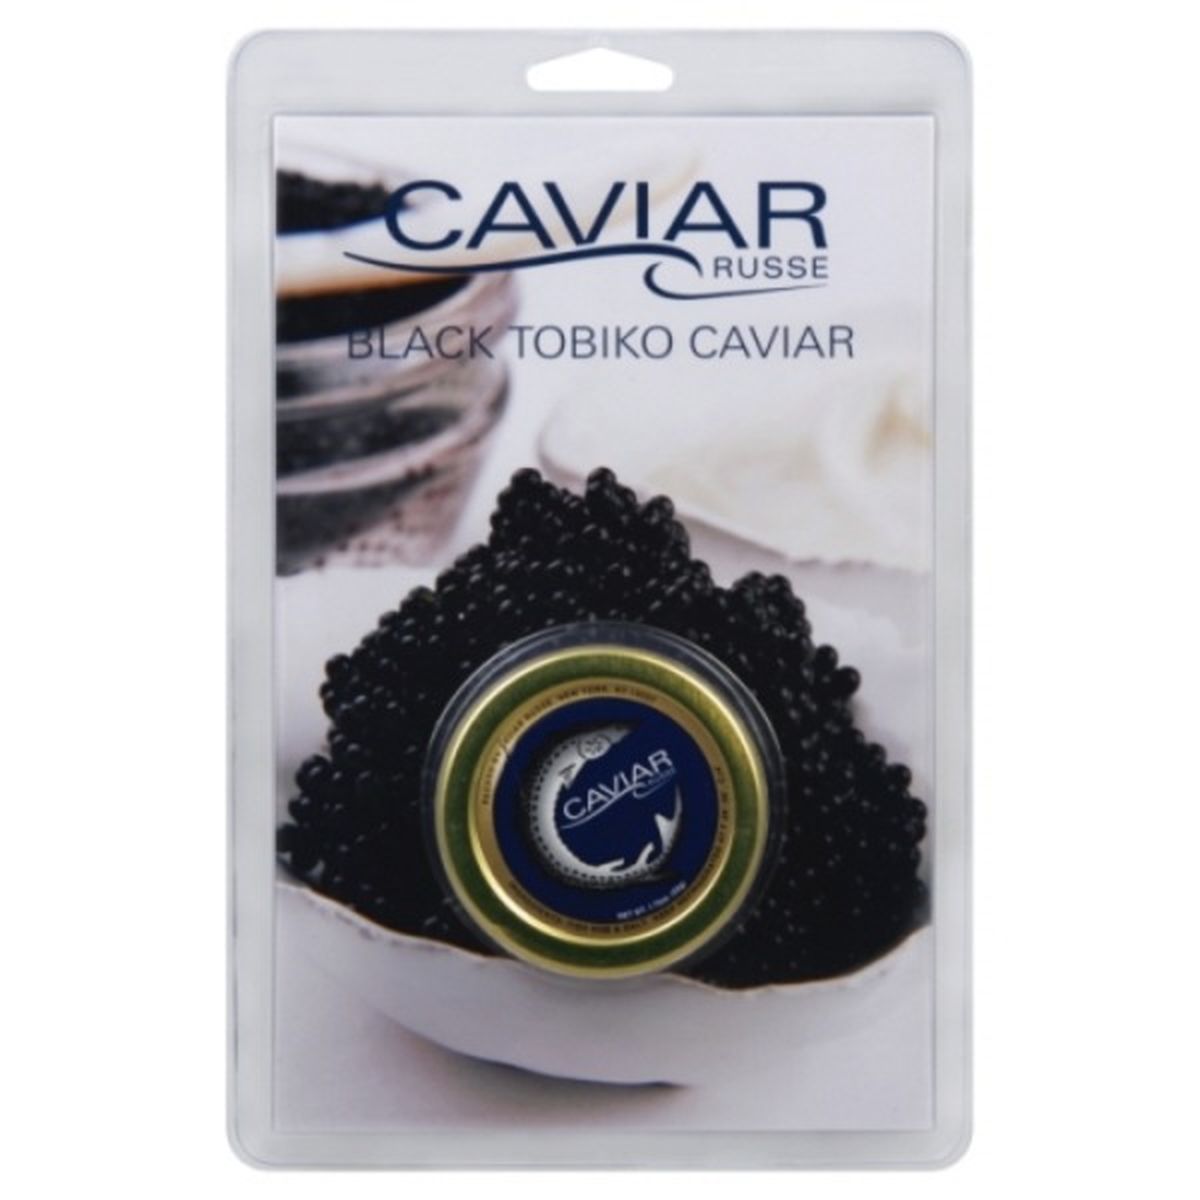 Calories in Caviar Russe Caviar, Black Tobiko